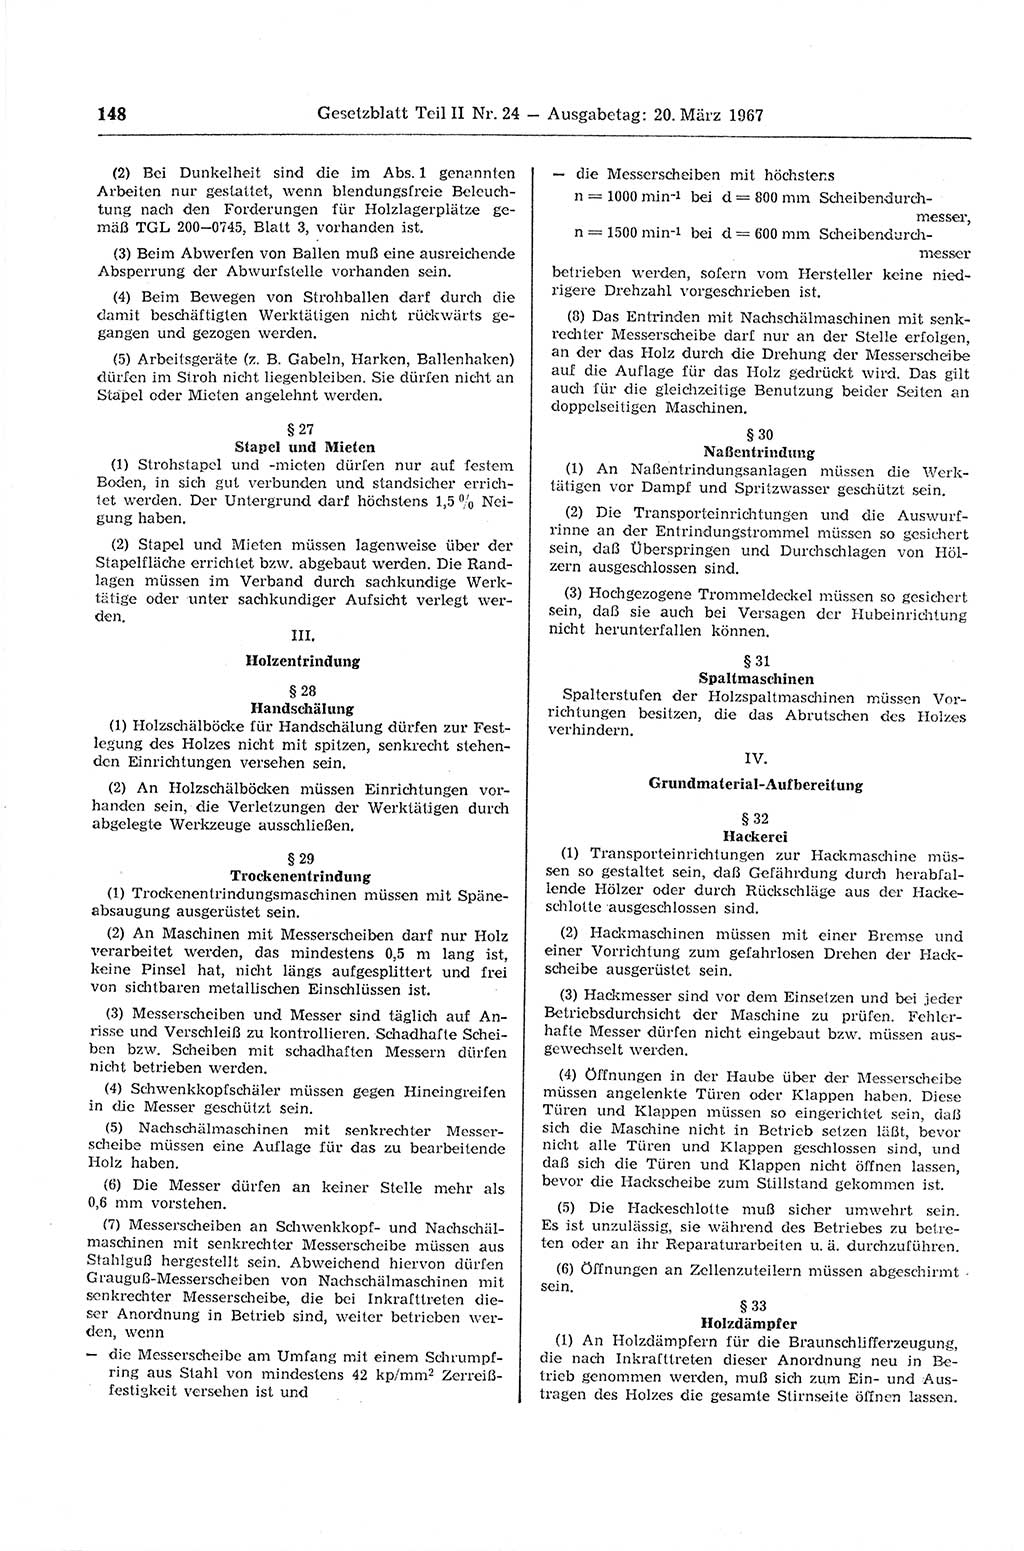 Gesetzblatt (GBl.) der Deutschen Demokratischen Republik (DDR) Teil ⅠⅠ 1967, Seite 148 (GBl. DDR ⅠⅠ 1967, S. 148)